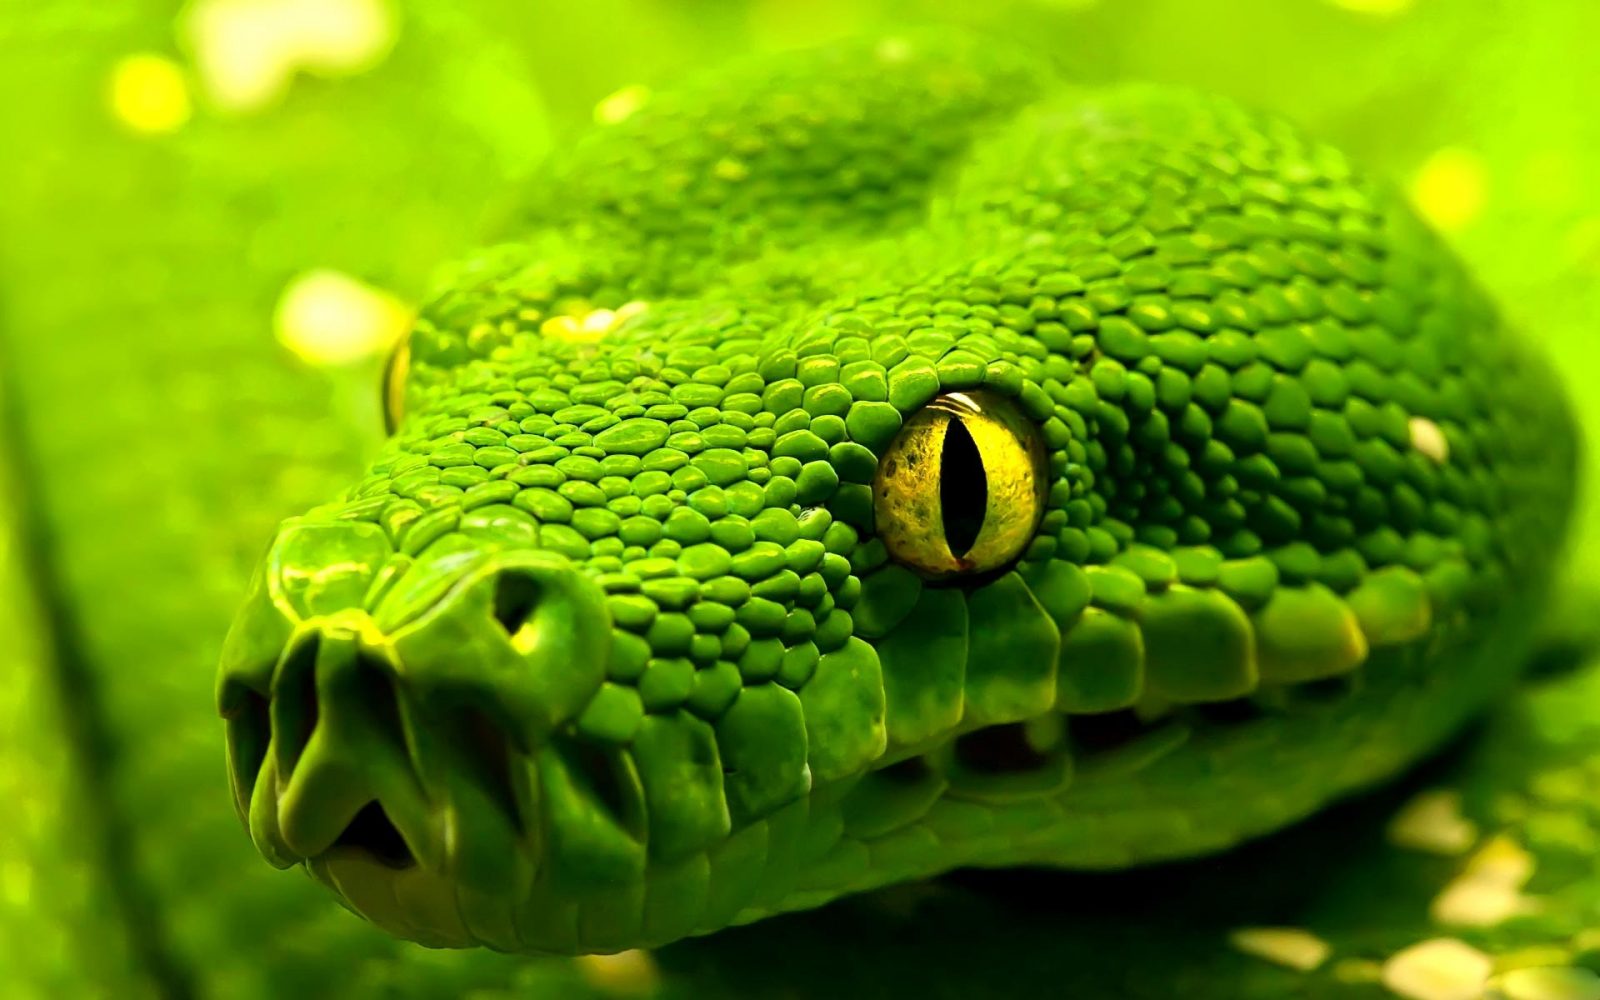 Imágenes de serpientes 3D